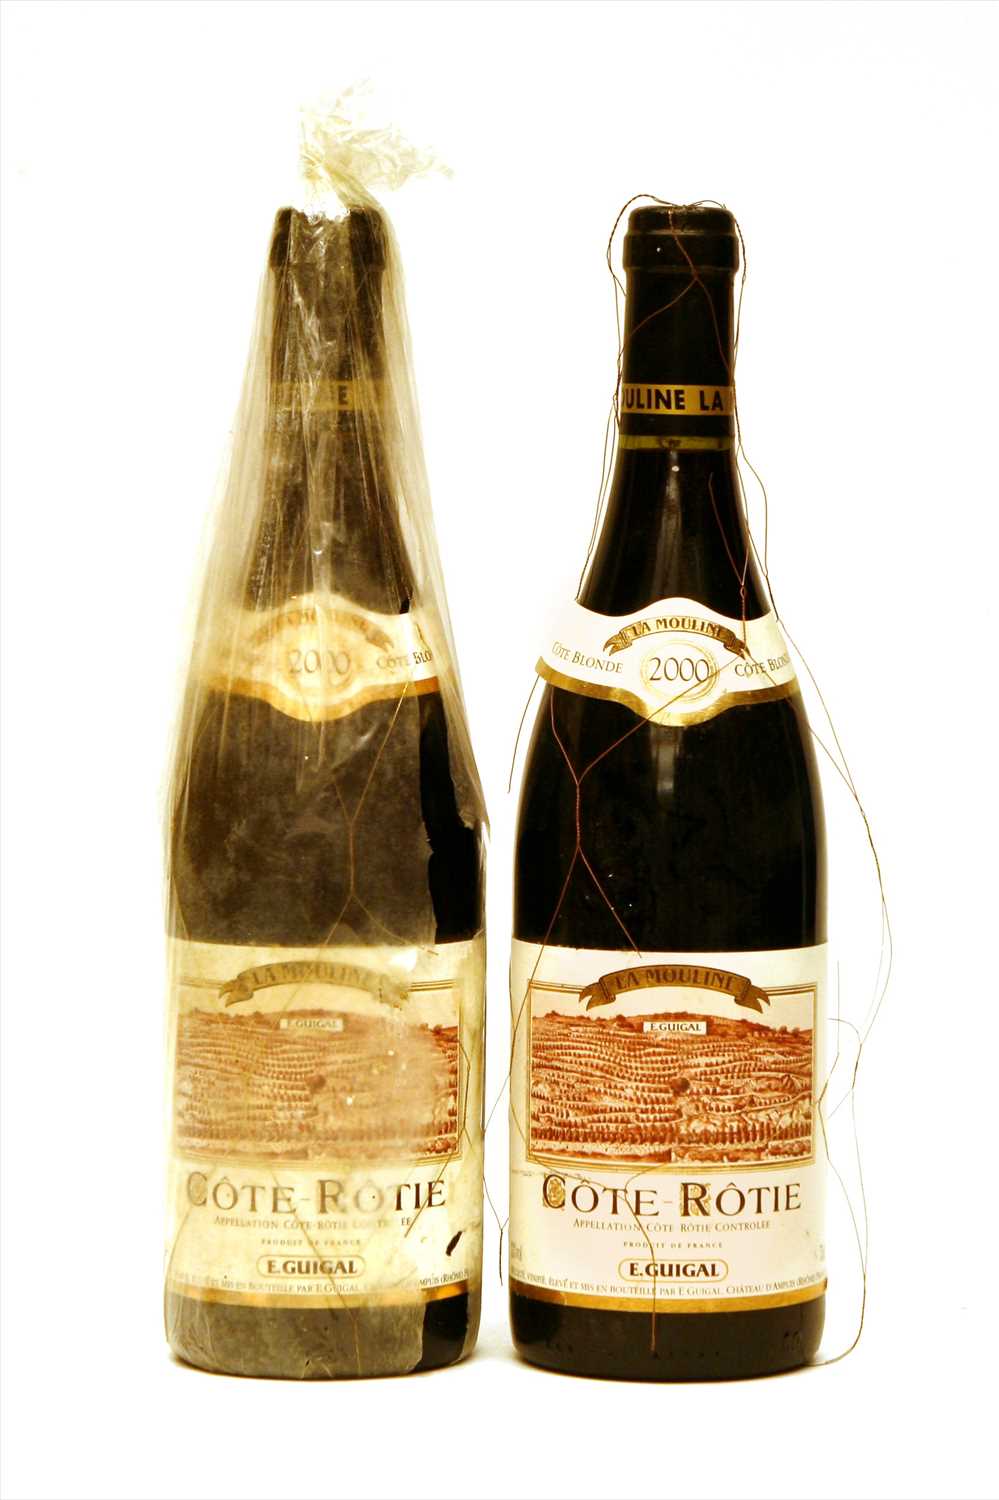 Lot 148 - E. Guigal, Côte-Rôtie, La Mouline, 2000, two bottles